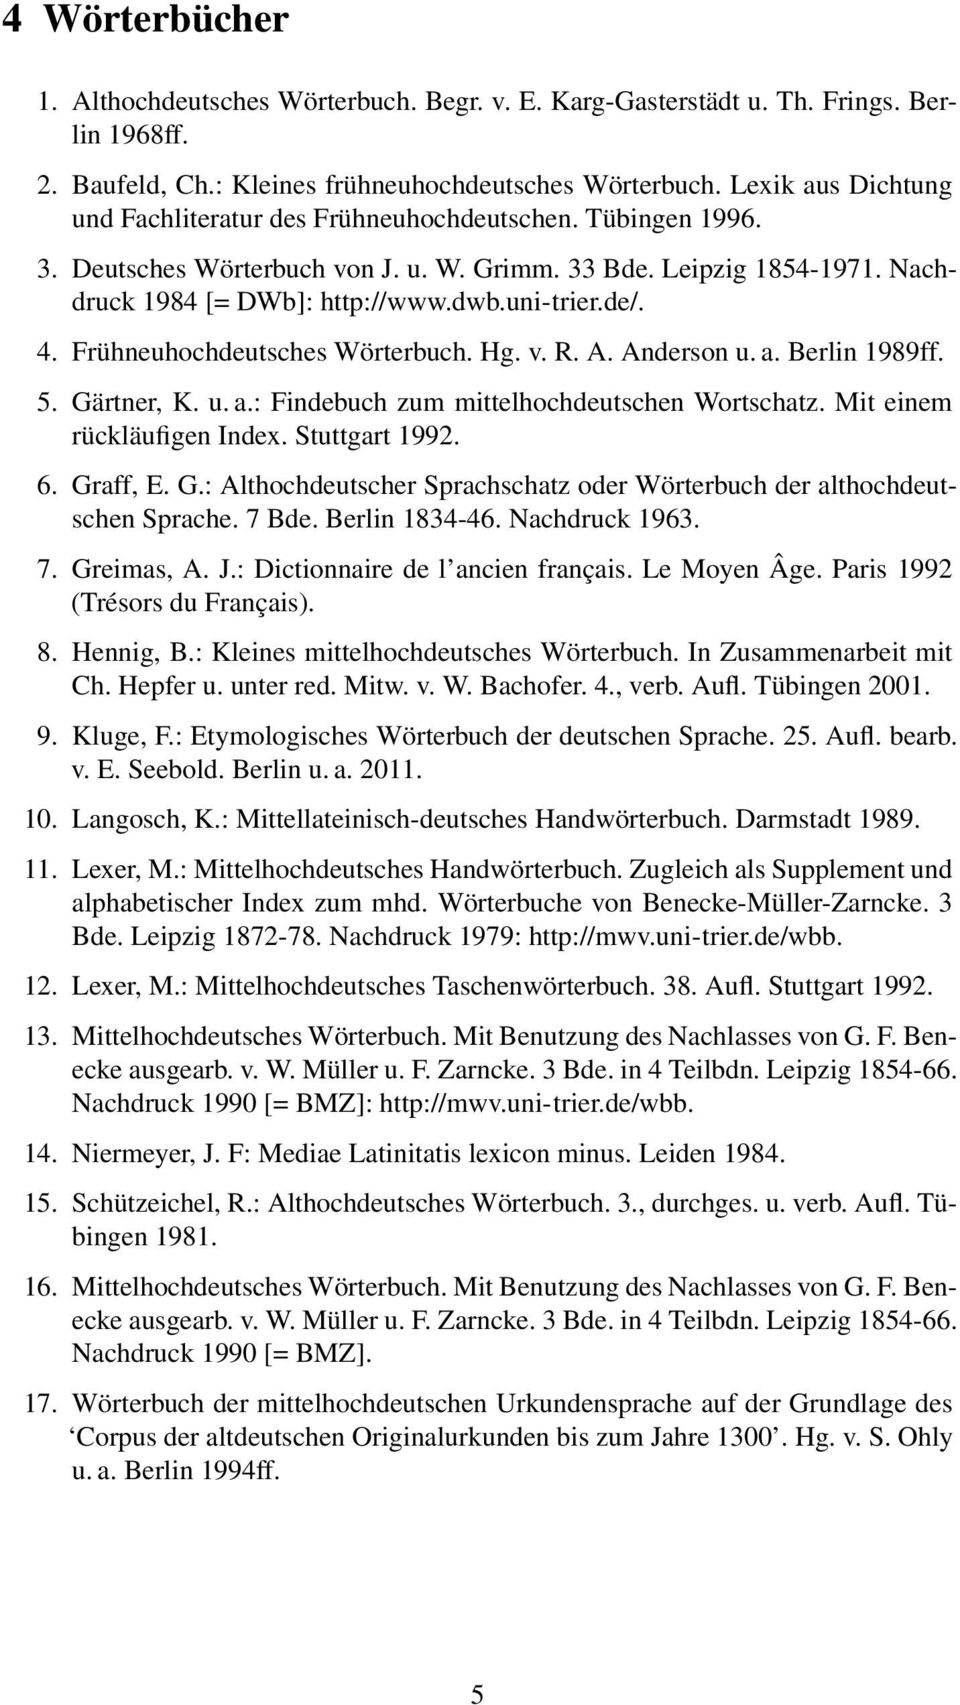 de/. 4. Frühneuhochdeutsches Wörterbuch. Hg. v. R. A. Anderson u. a. Berlin 1989ff. 5. Gärtner, K. u. a.: Findebuch zum mittelhochdeutschen Wortschatz. Mit einem rückläufigen Index. Stuttgart 1992. 6.